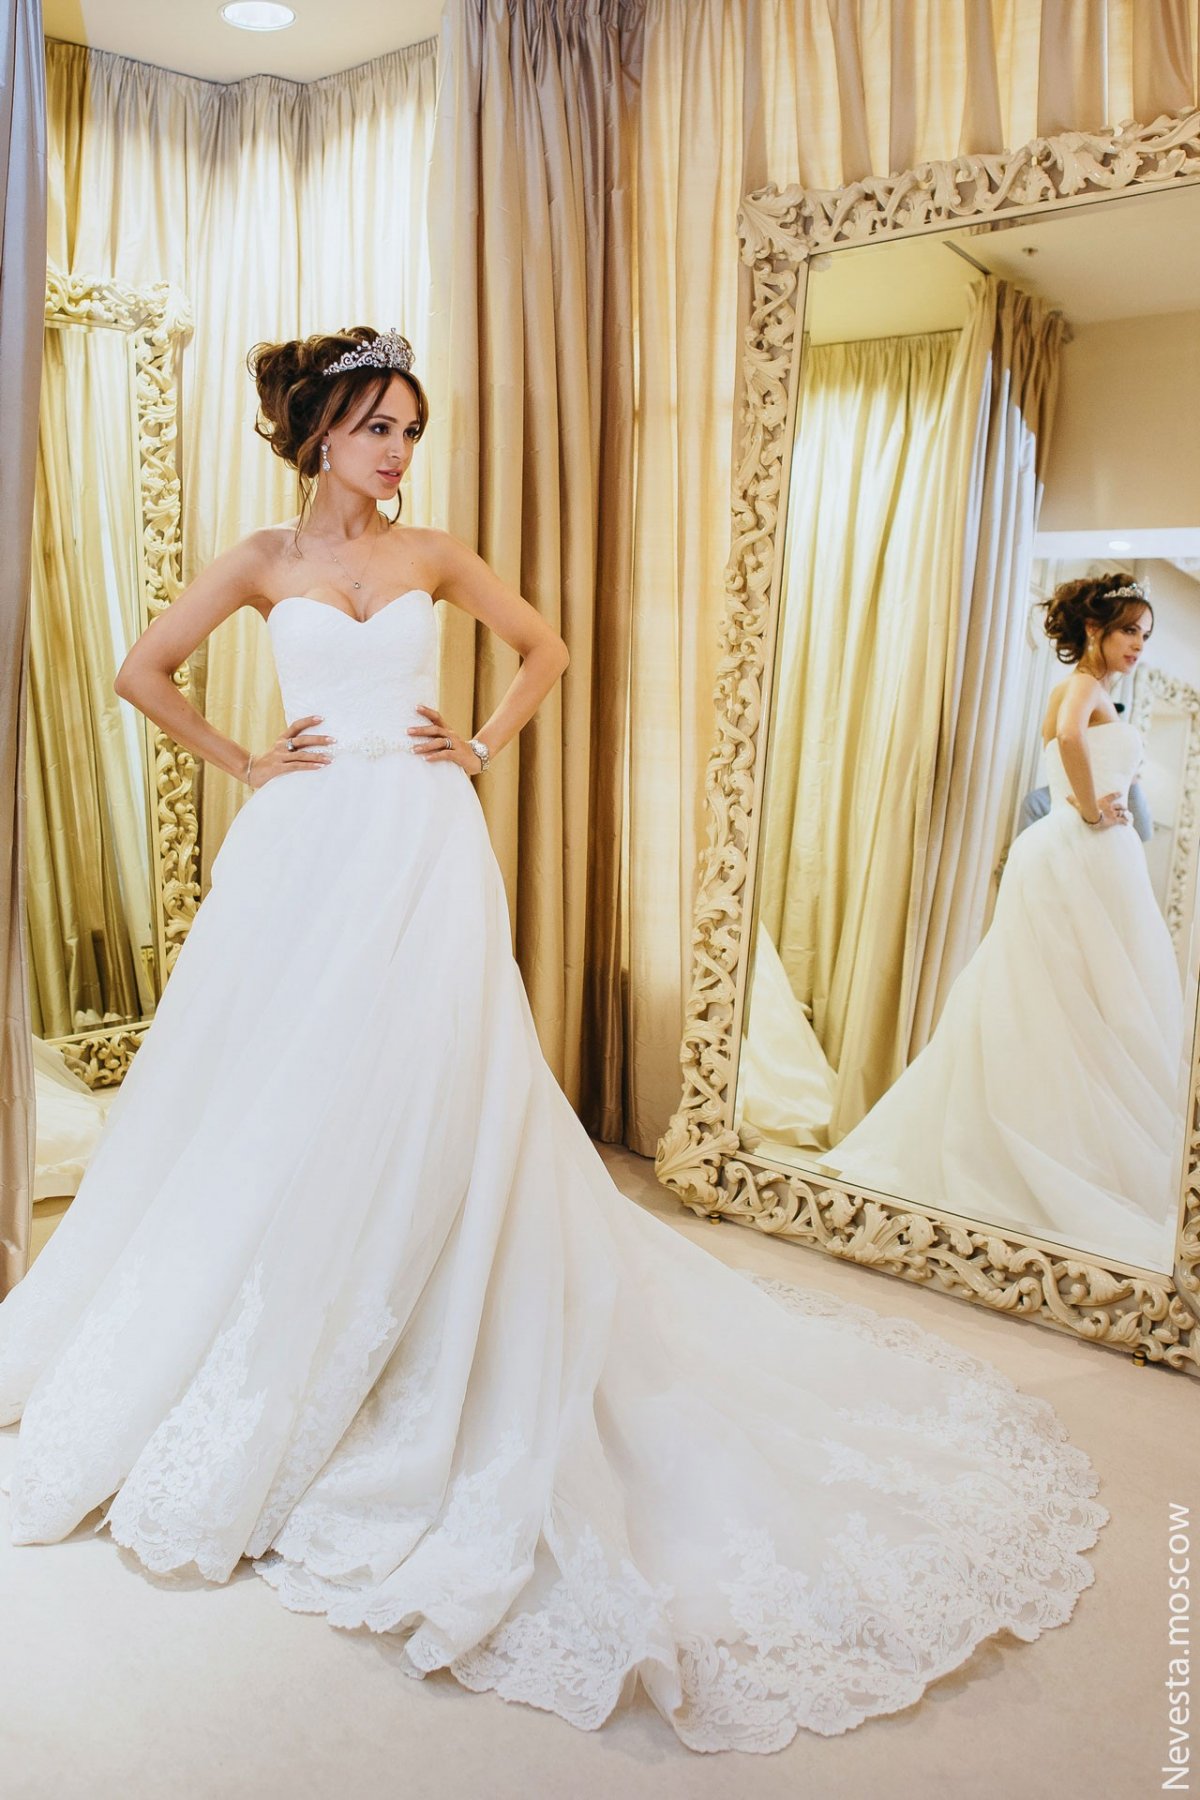 Анна Калашникова выбирает образ для своей свадьбы фото 27